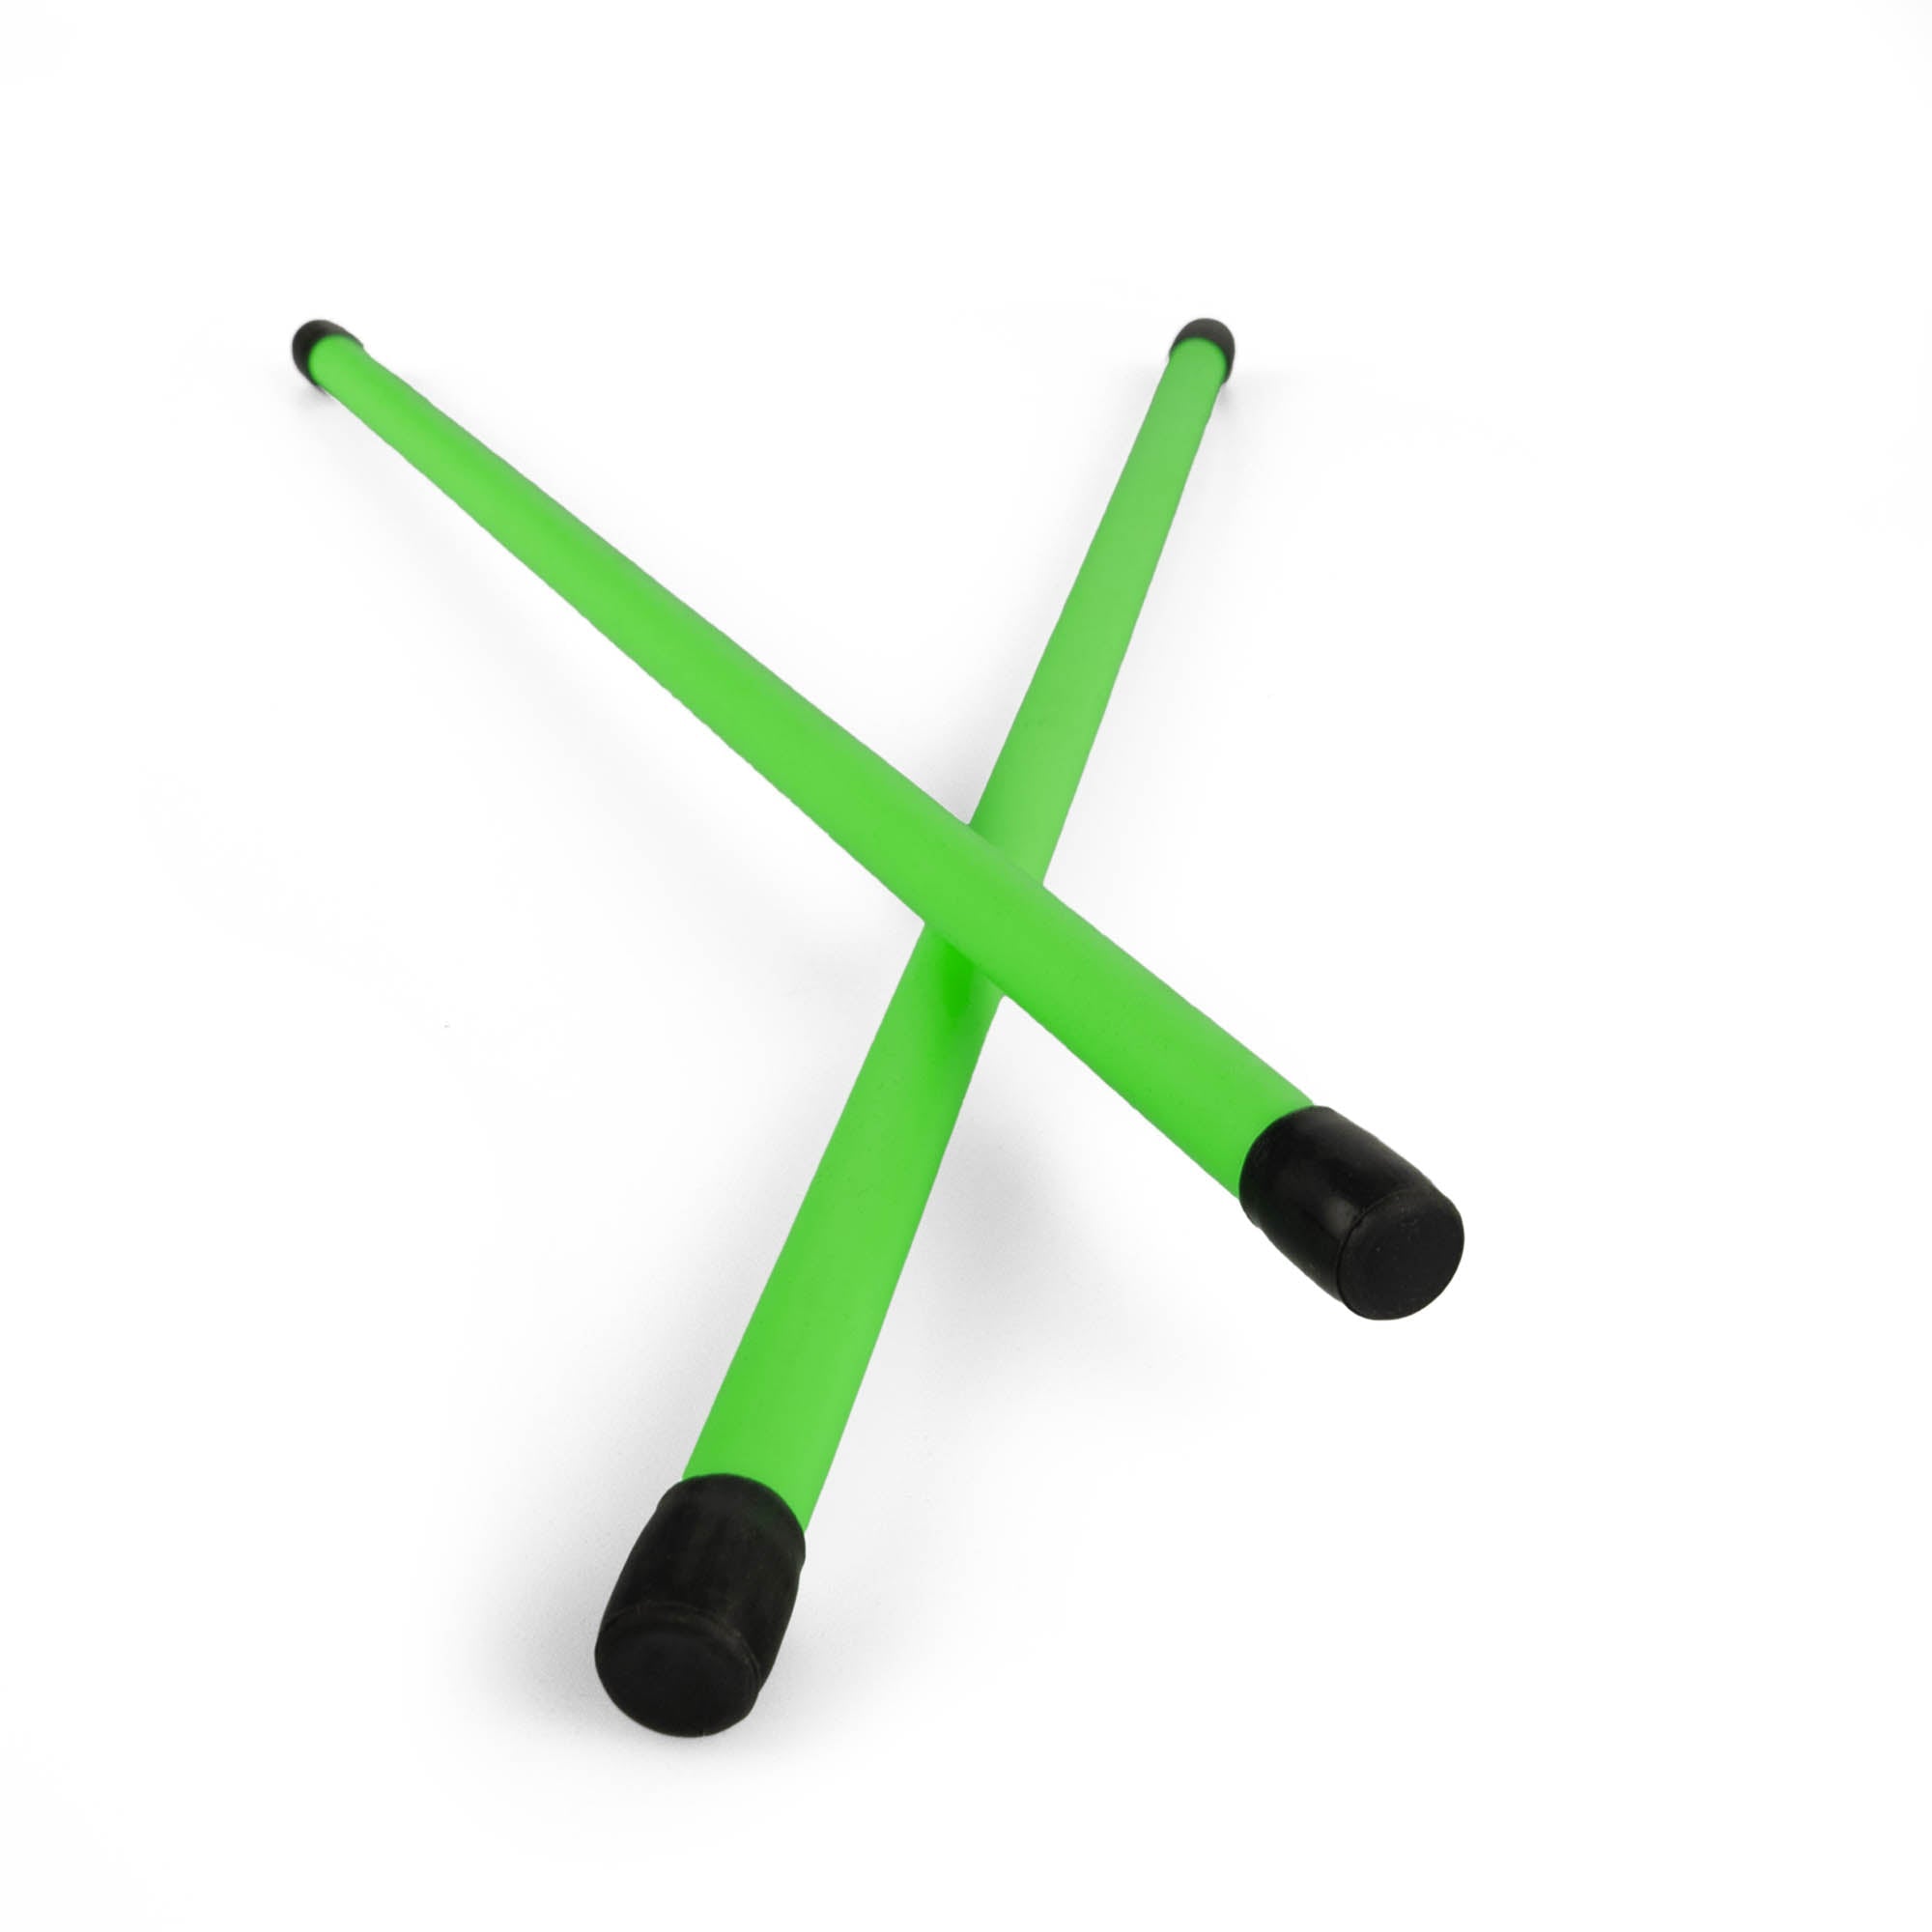 A pair of green devilstick handsticks crossed over